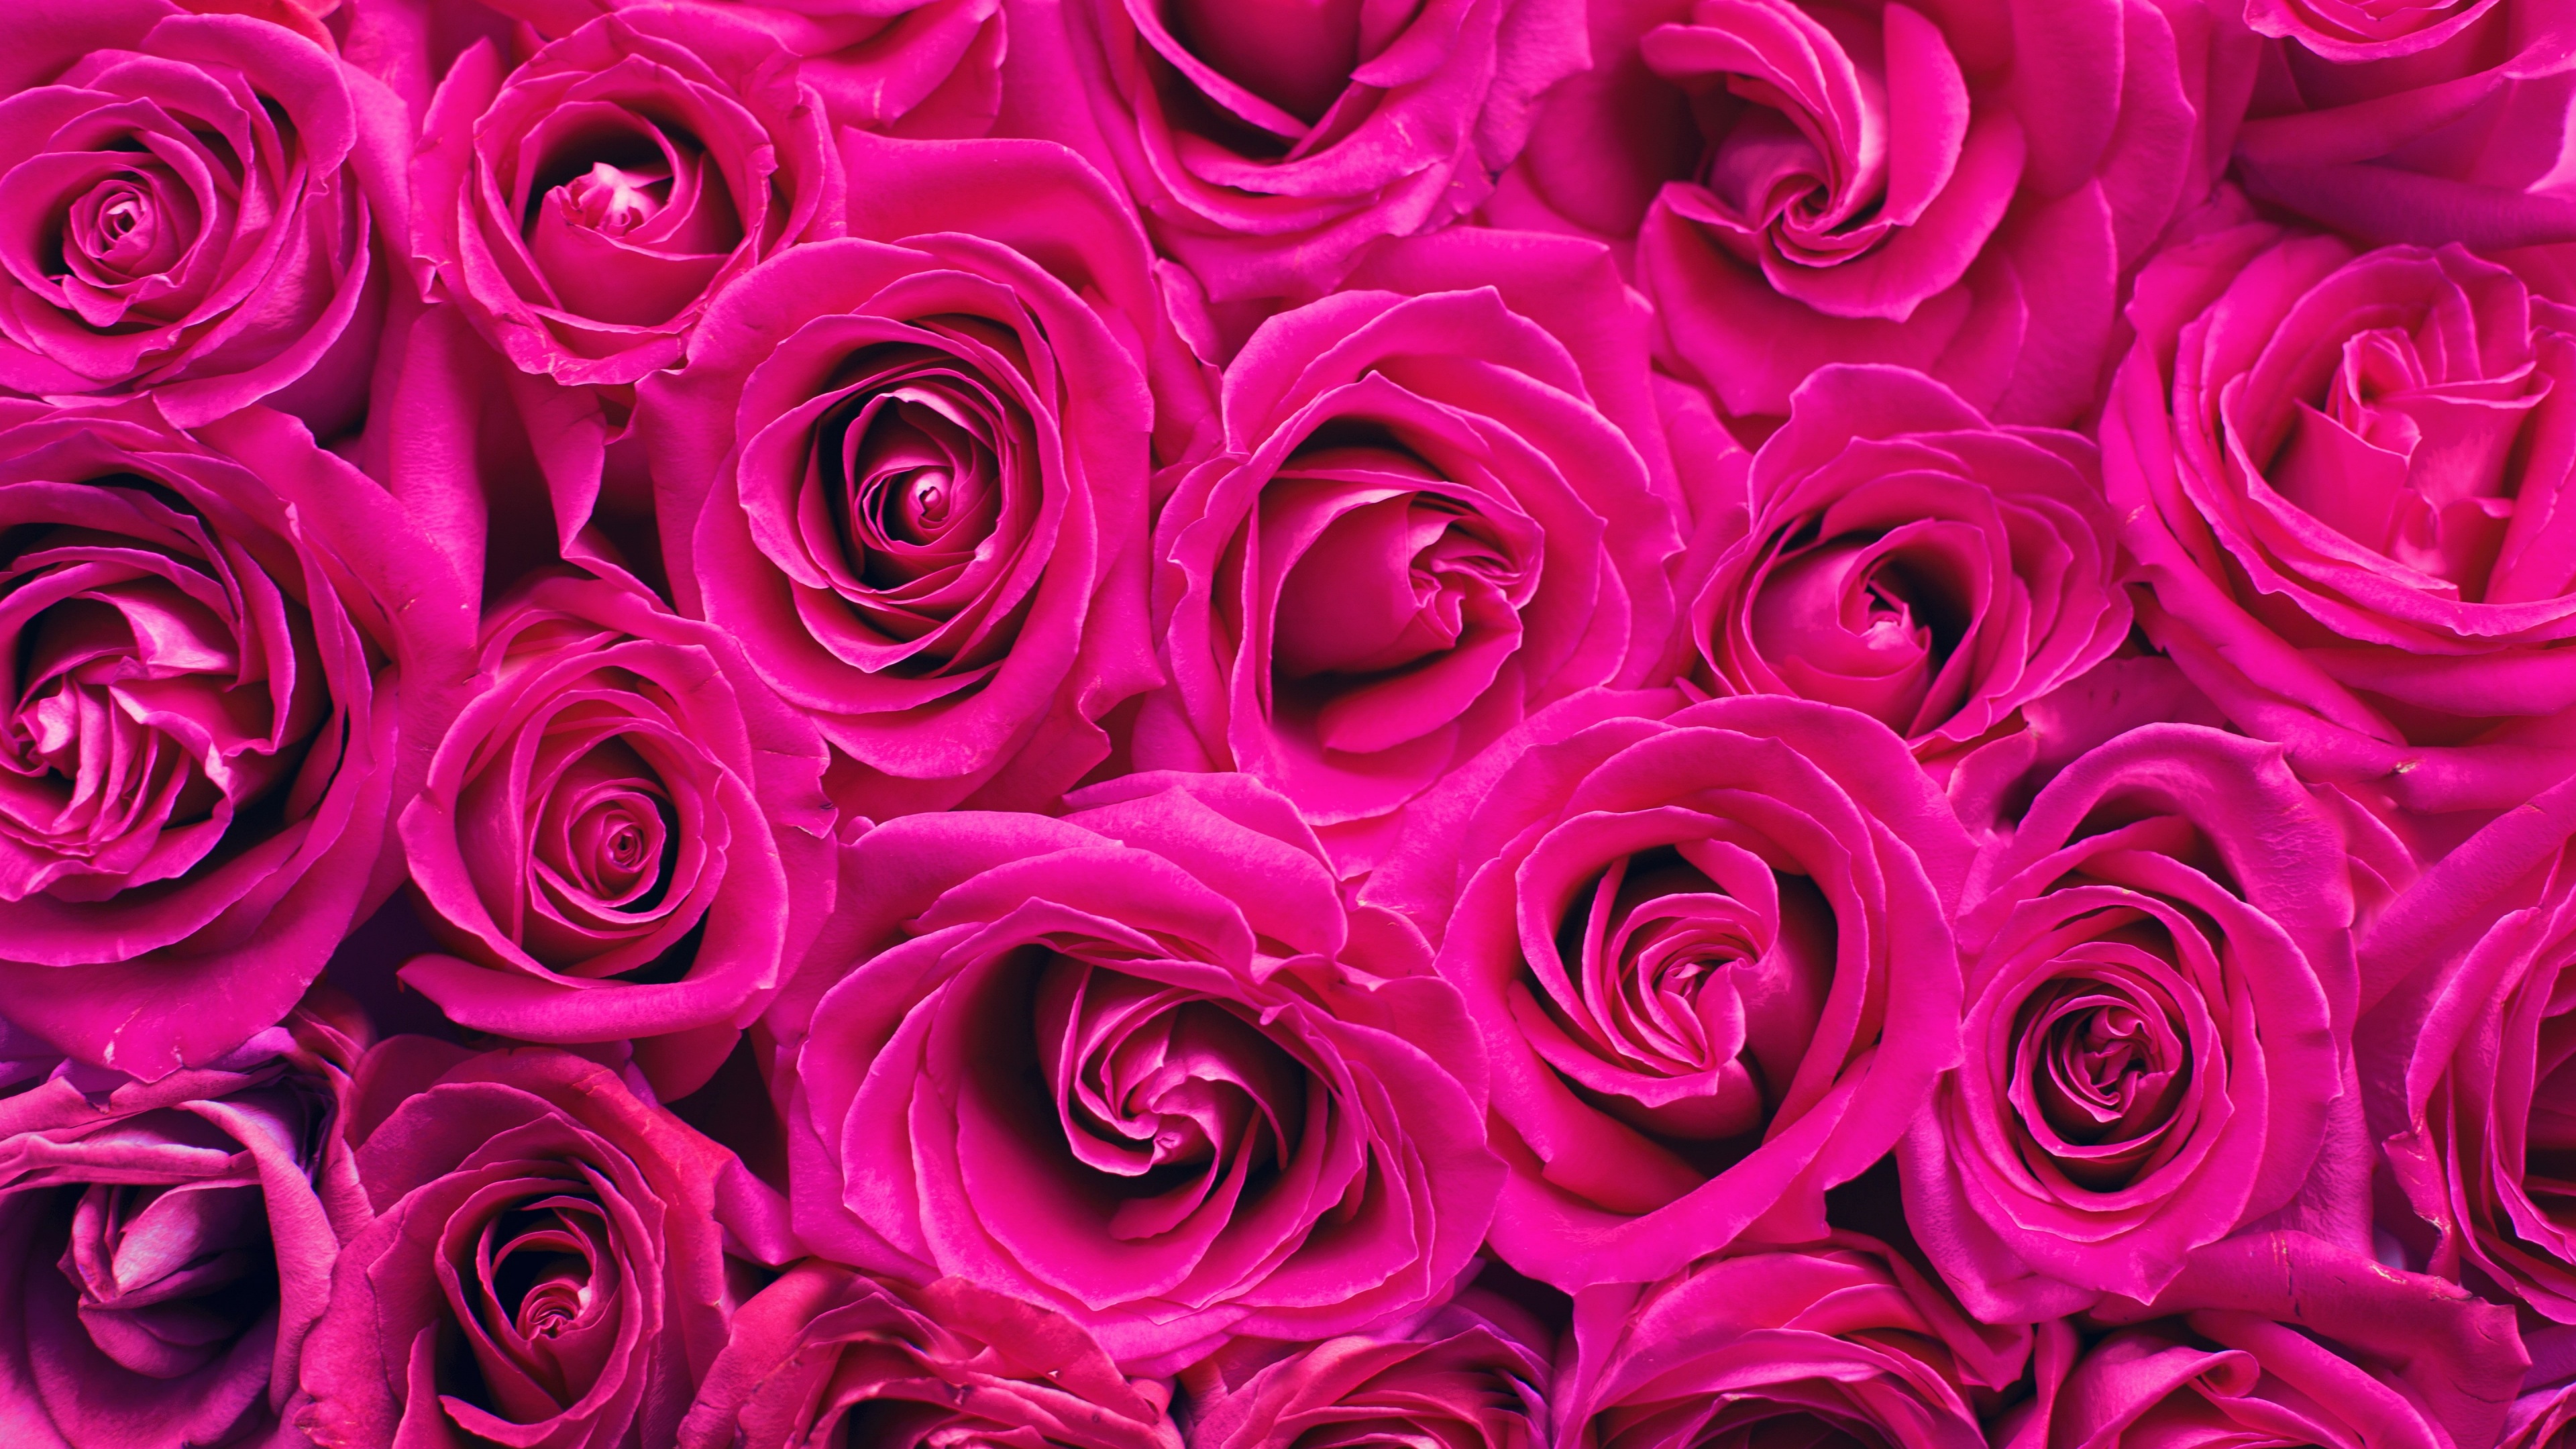 Hình nền 4K với hoa hồng màu hồng sẽ khiến cho màn hình của bạn trở thành một tác phẩm nghệ thuật sống động. Chất lượng hình ảnh sắc nét và chân thực, đem đến cho người dùng trải nghiệm tuyệt vời khi sử dụng điện thoại của mình.